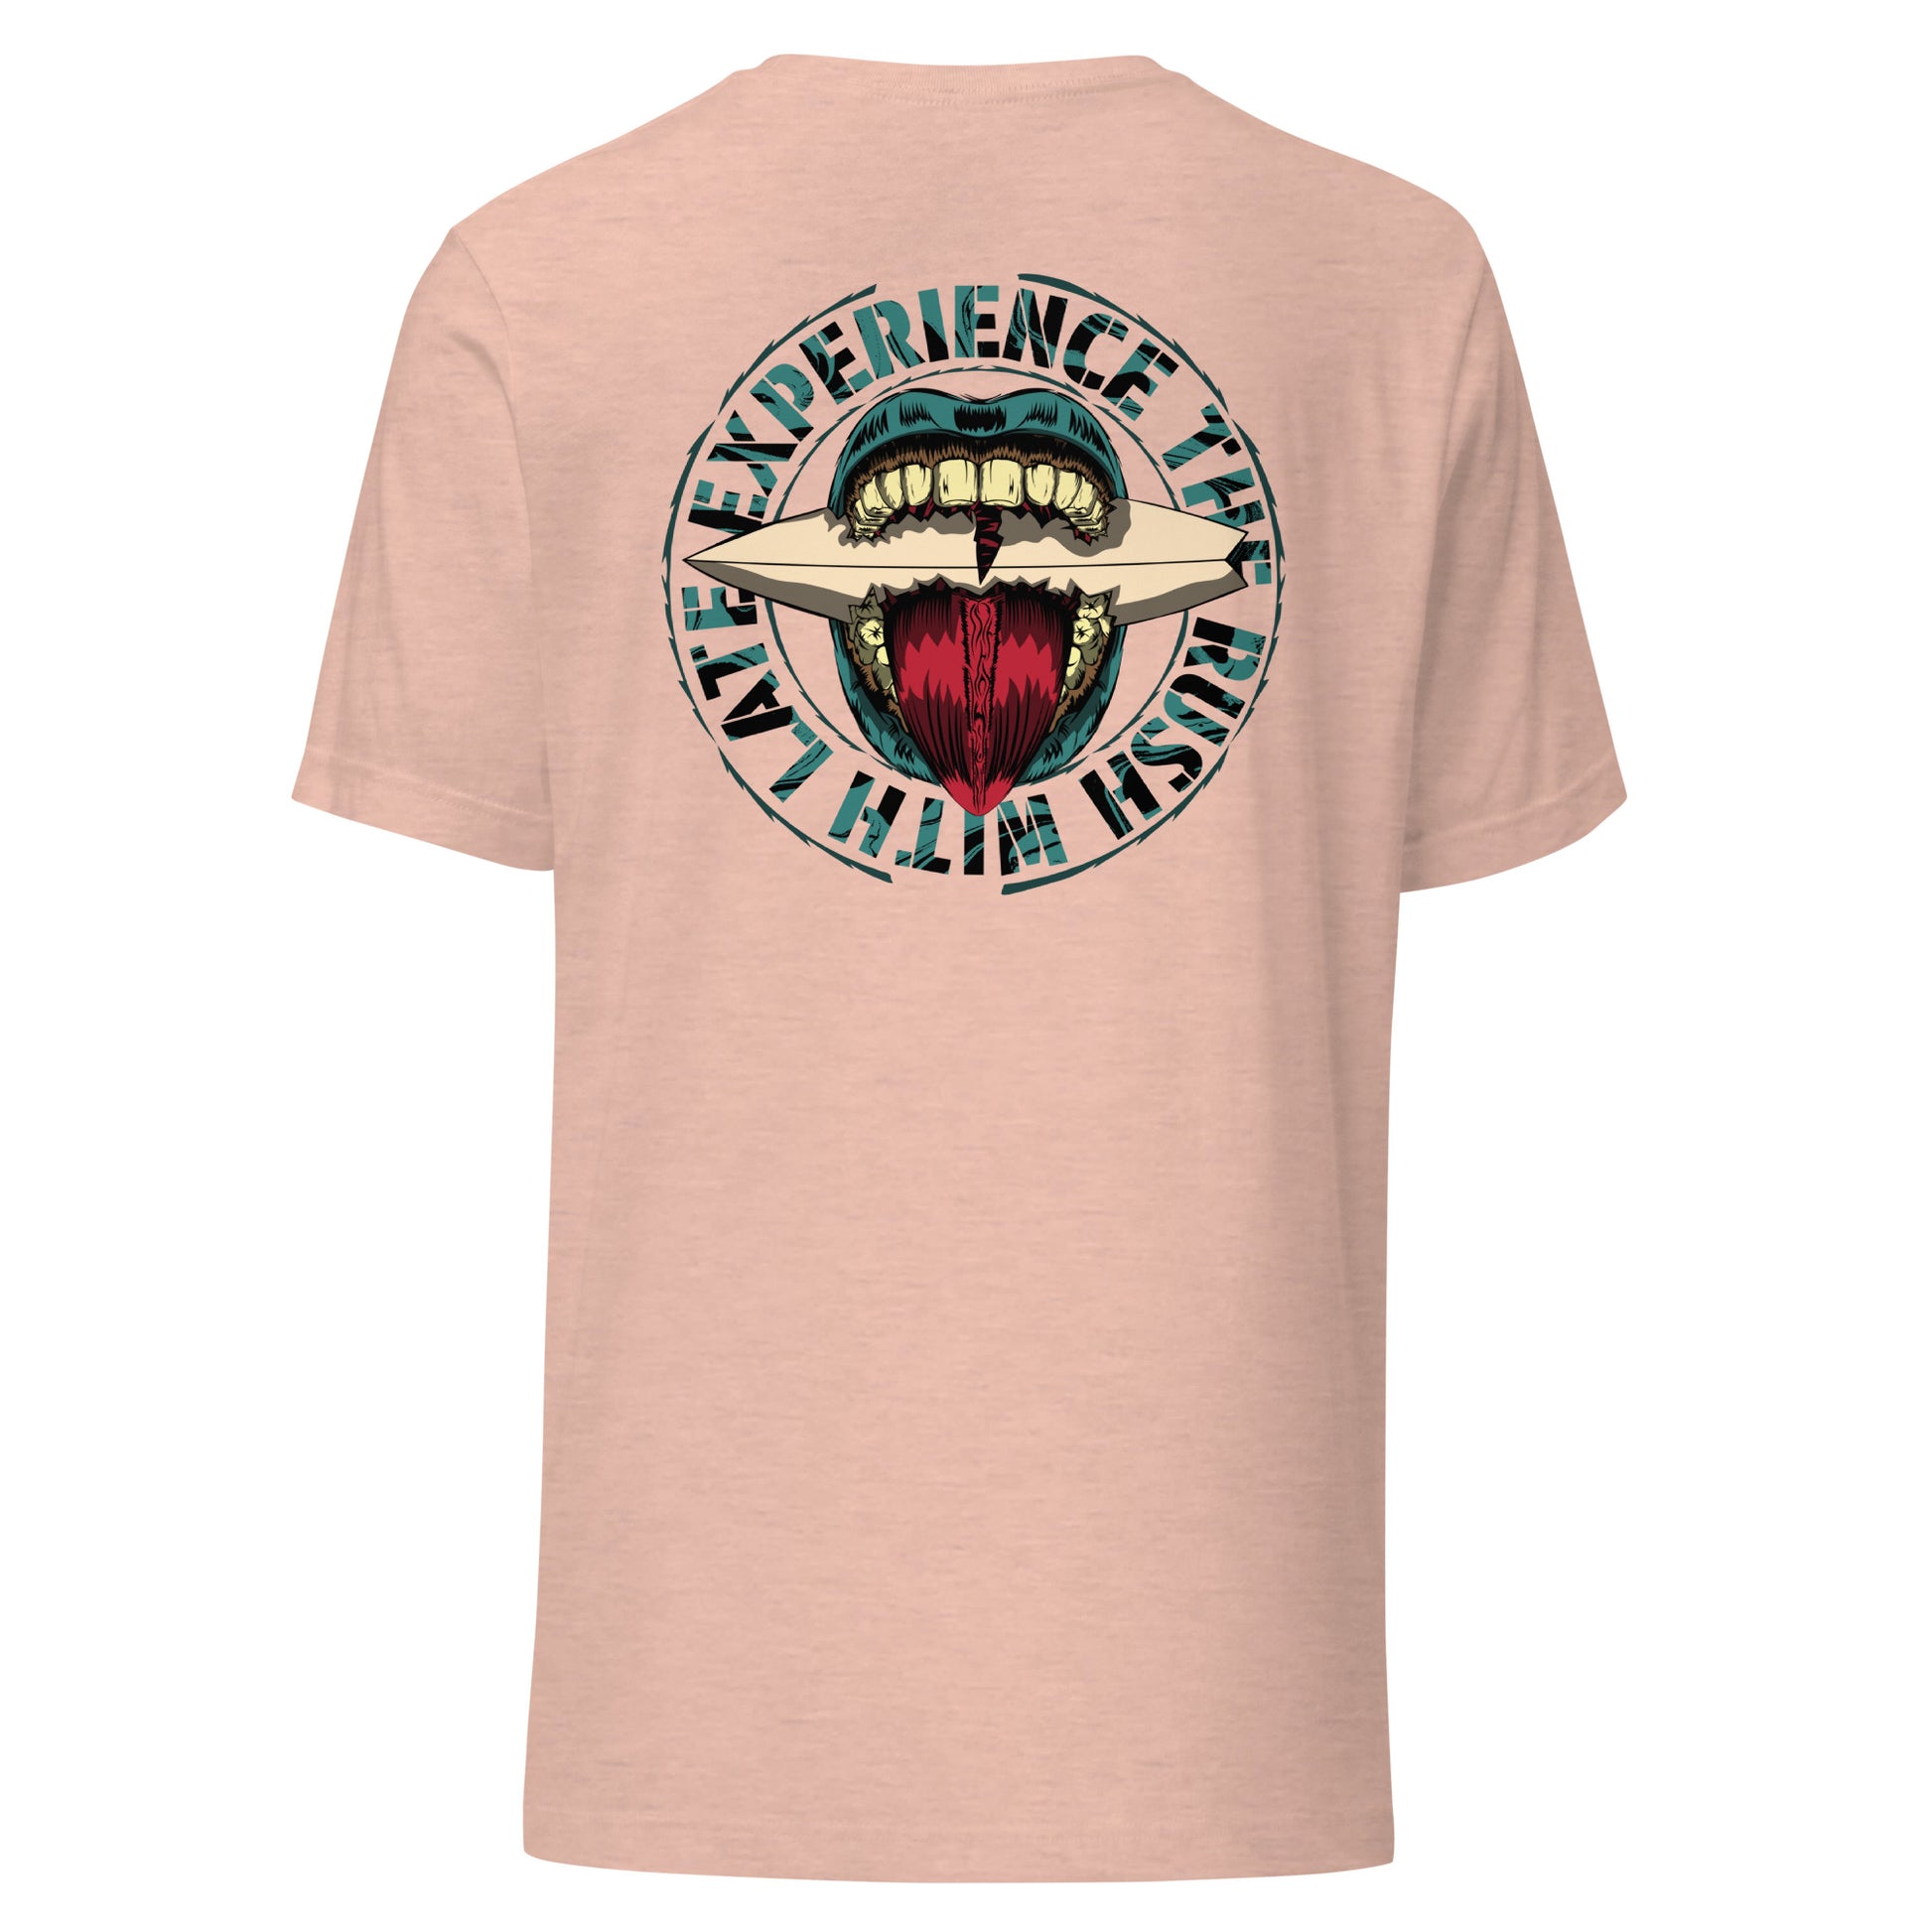 T-Shirt de surfeur style santacruz skateboarding et planche de surf texte experience the rush Late t-shirt dos couleur rose